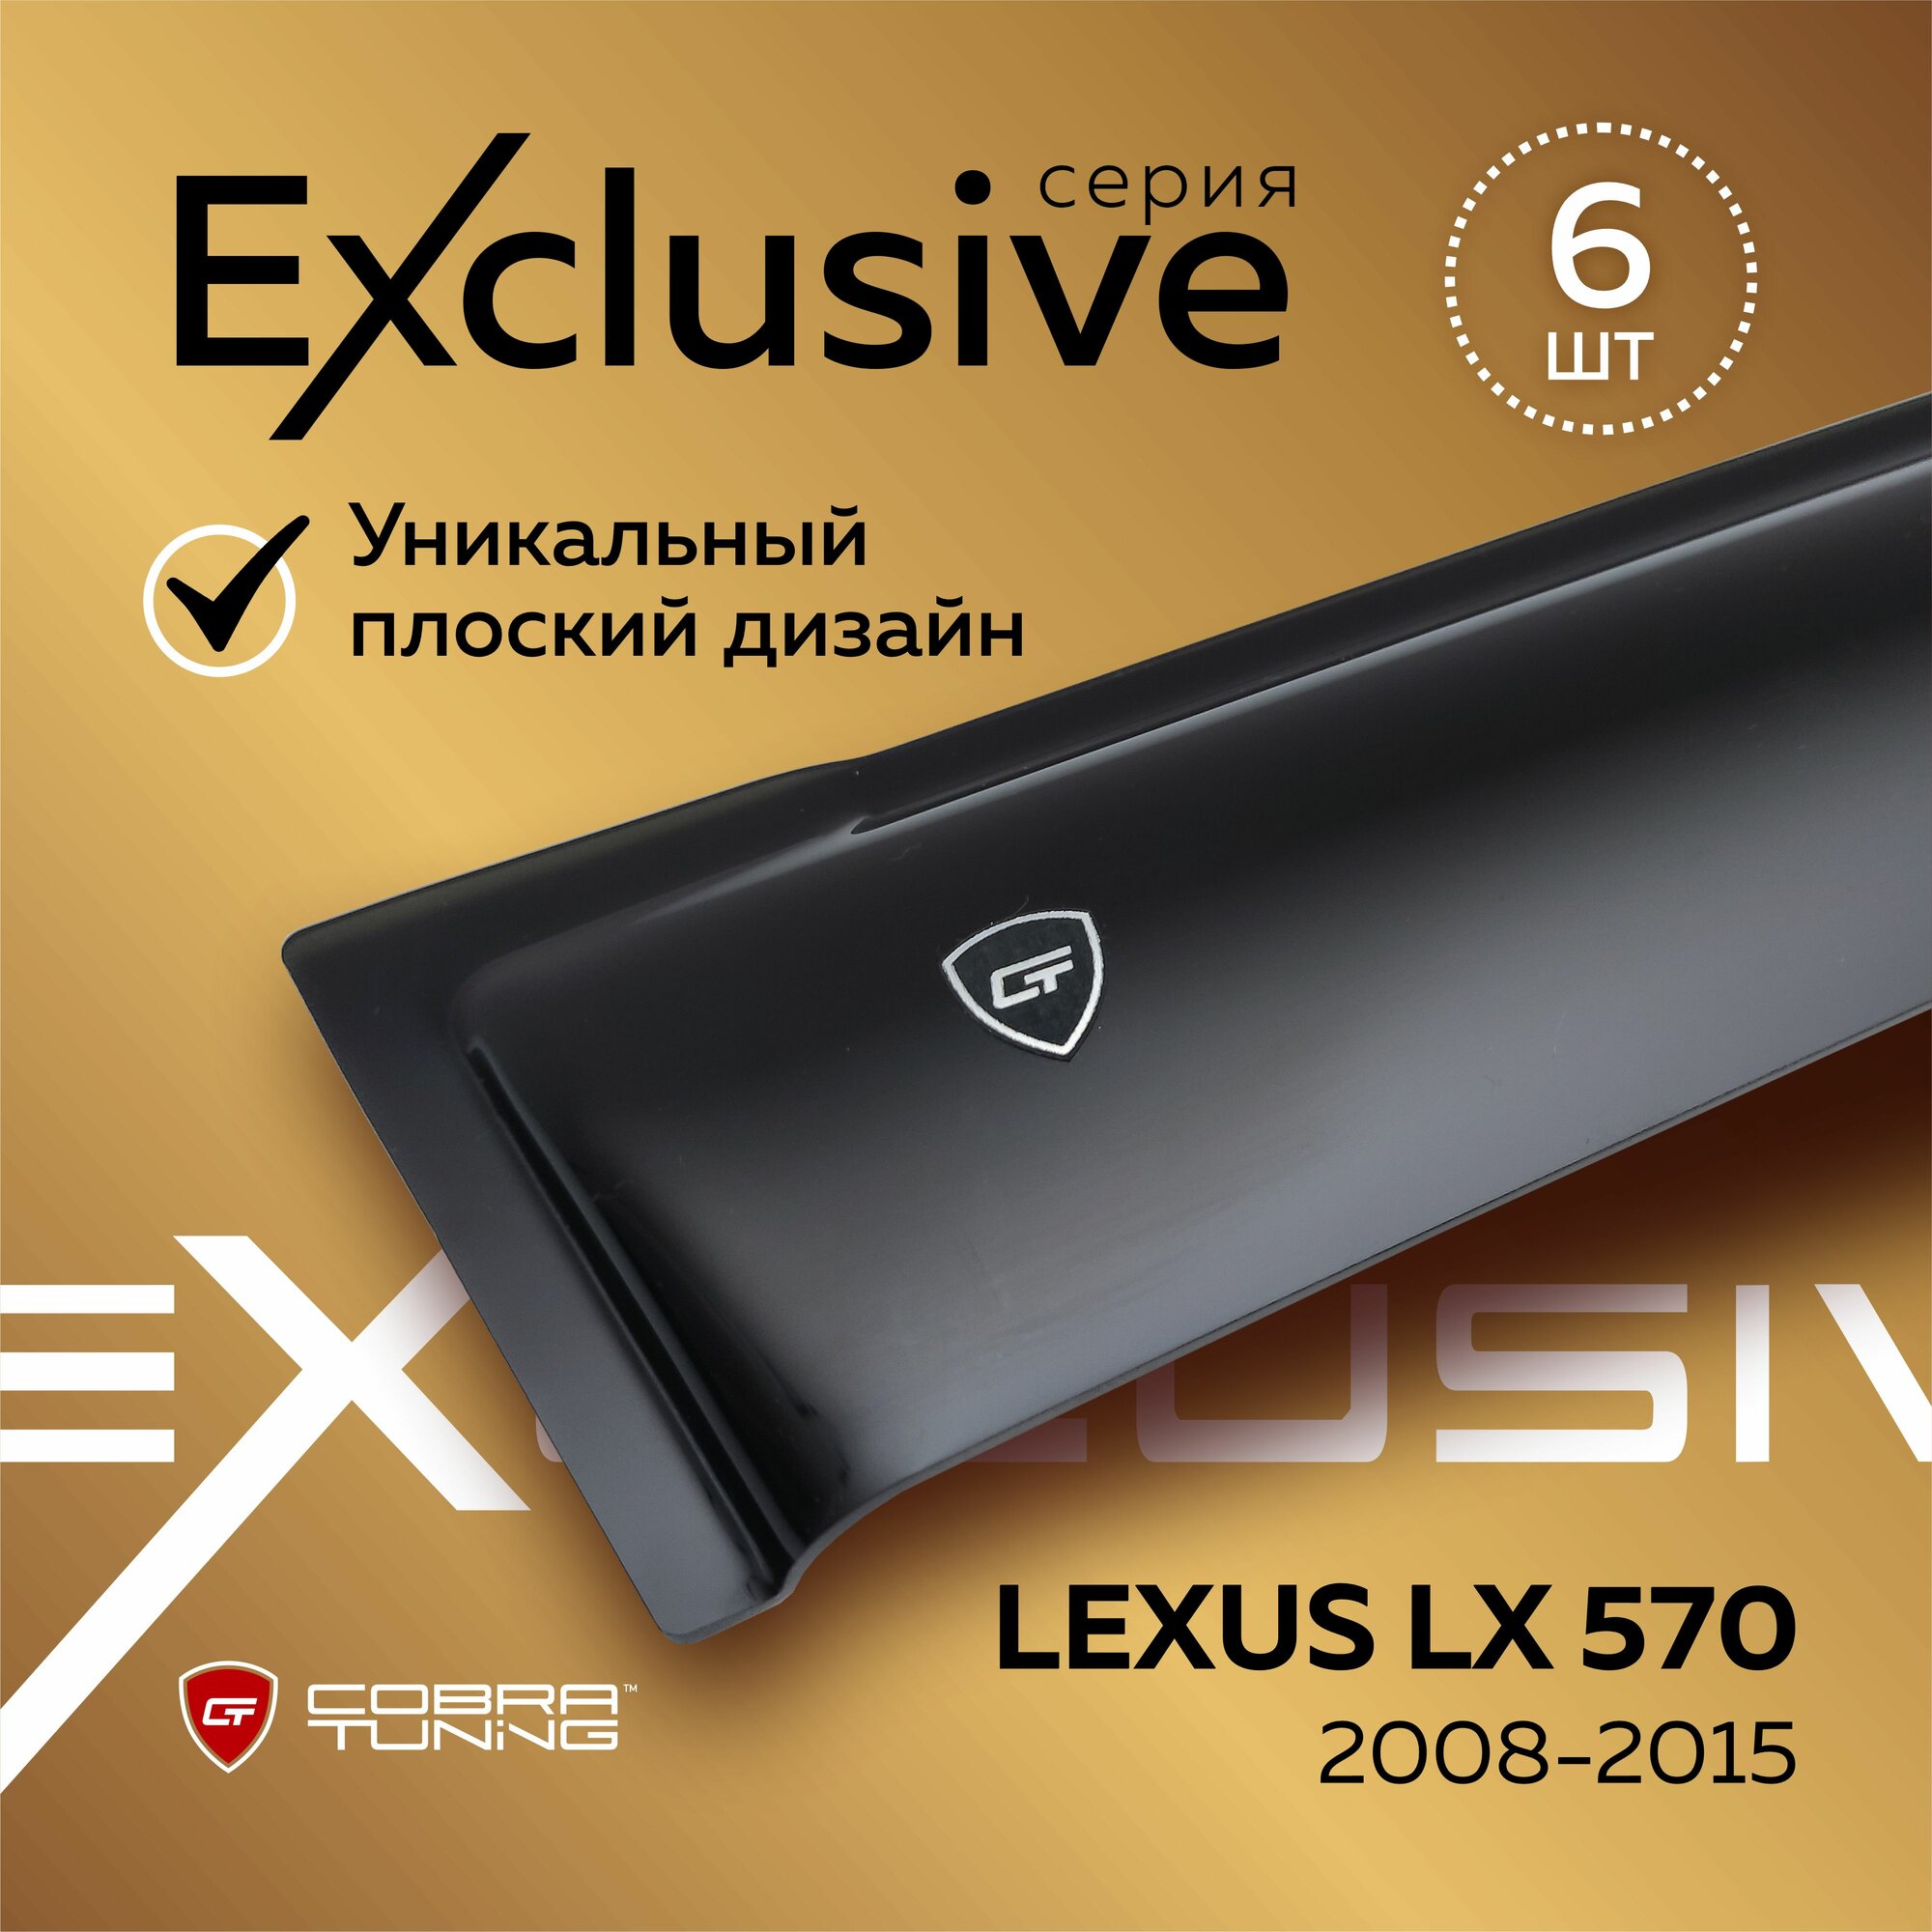 Дефлекторы боковых окон серия "Exclusive" для автомобиля Lexus LX 570 (Лексус Лх) J200 с 2008 по 2015, ветровики, полный комплект с уголками, 6 частей, Cobra Tuning